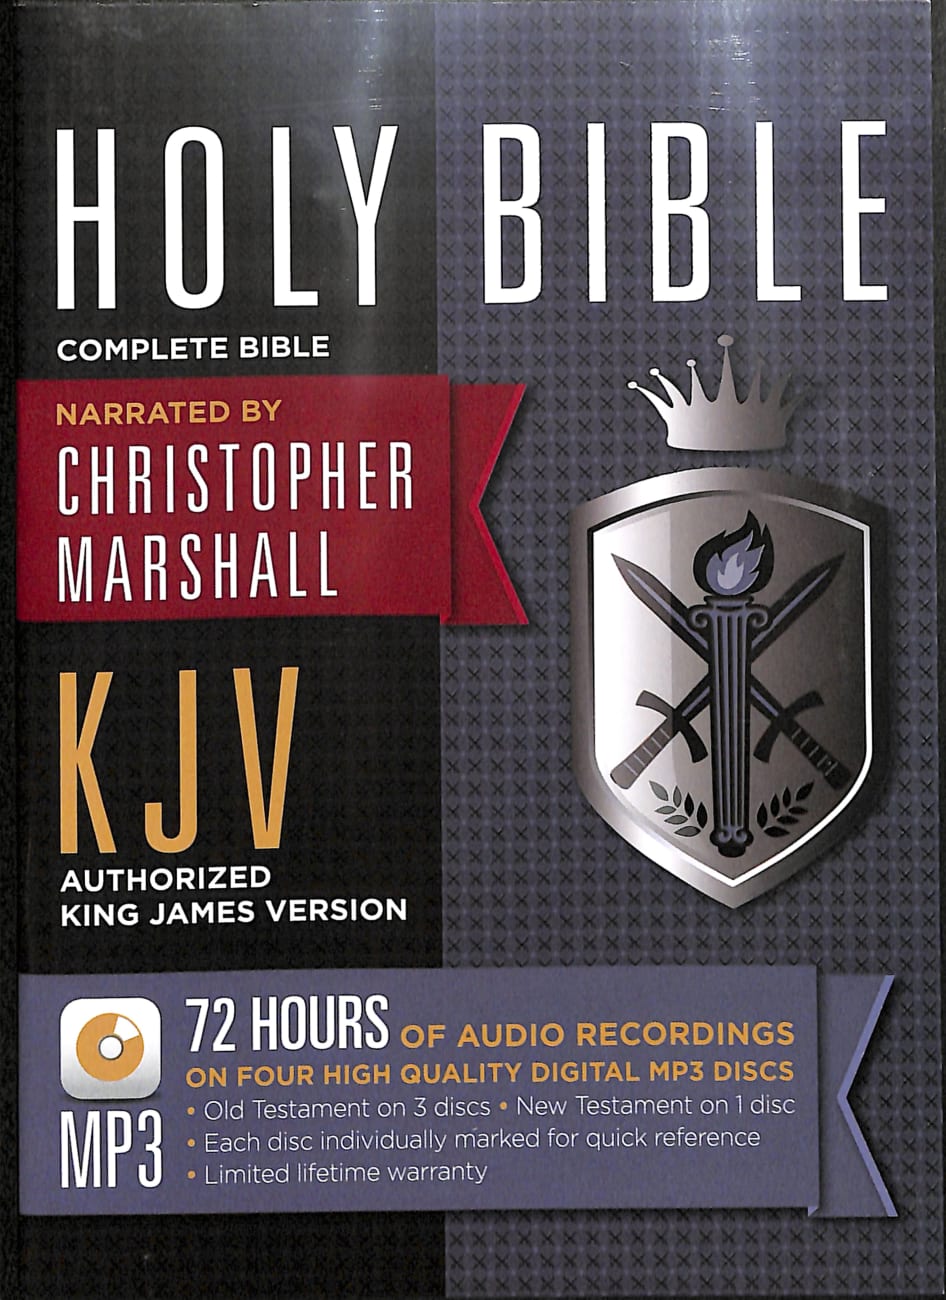 KJV Complete Bible on MP3 CD